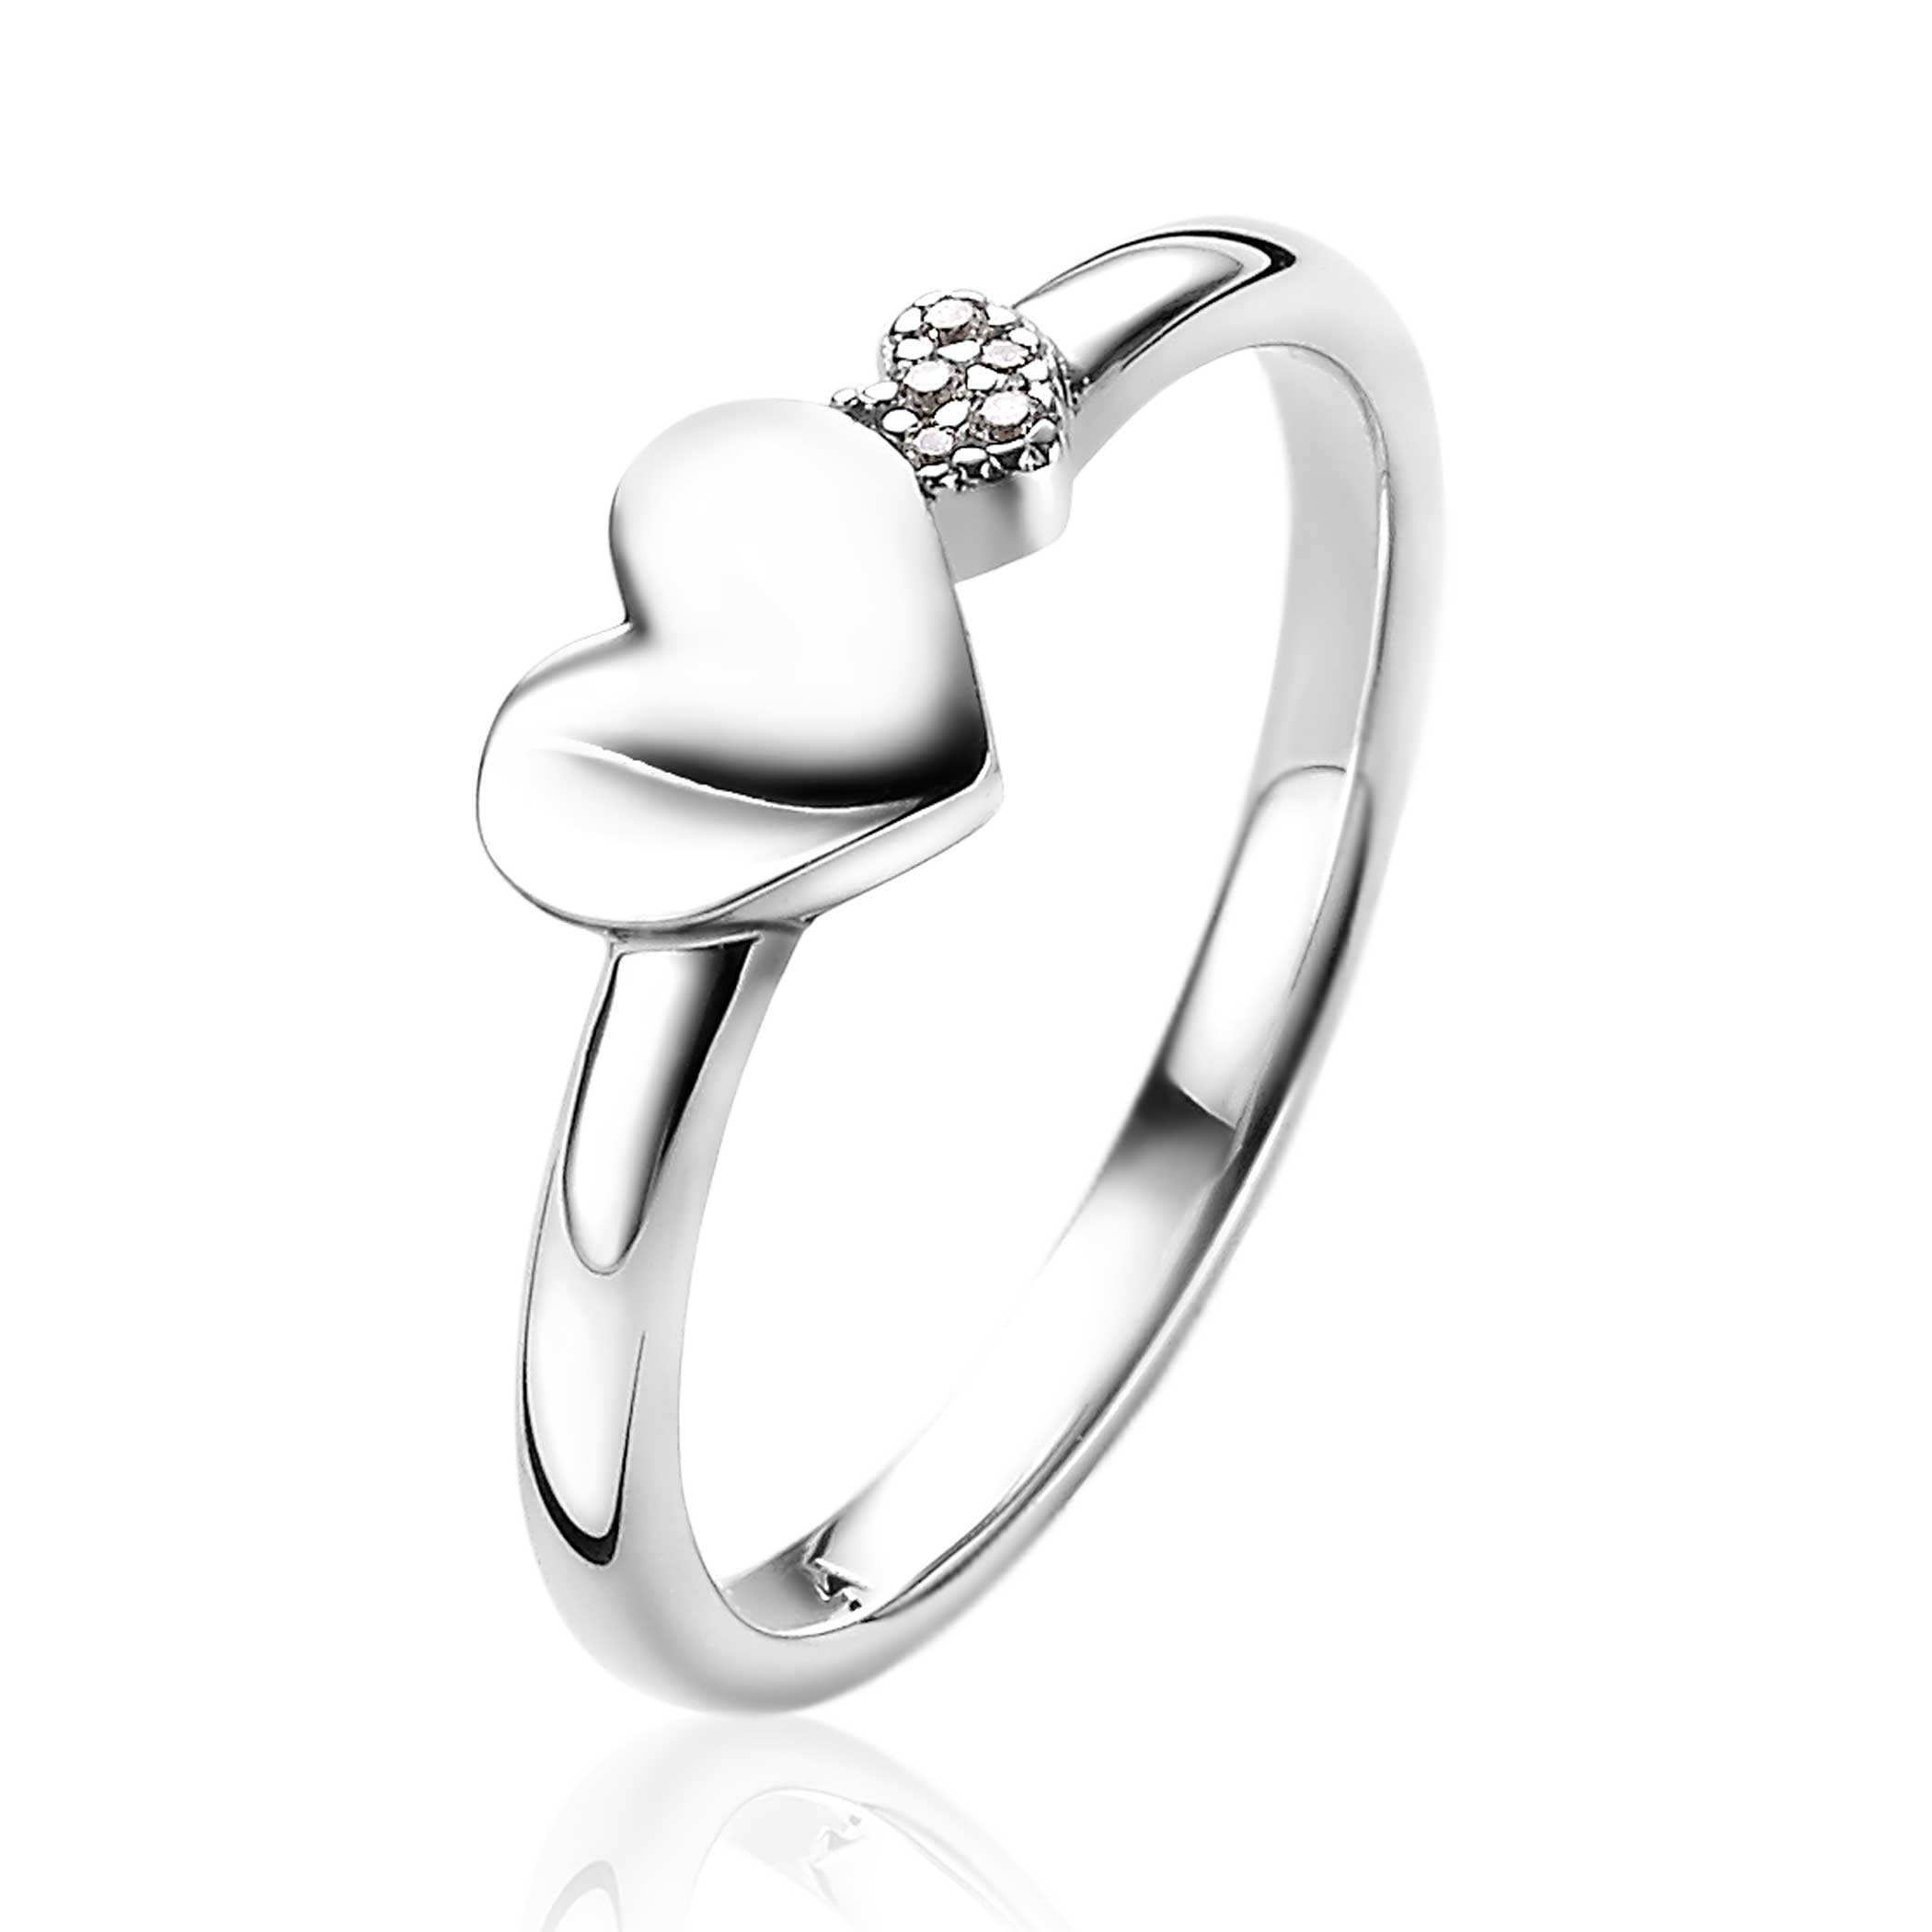 Bevestigen bevind zich Het beste ZINZI zilveren ring hartjes glad en witte zirconia's ZIR2137